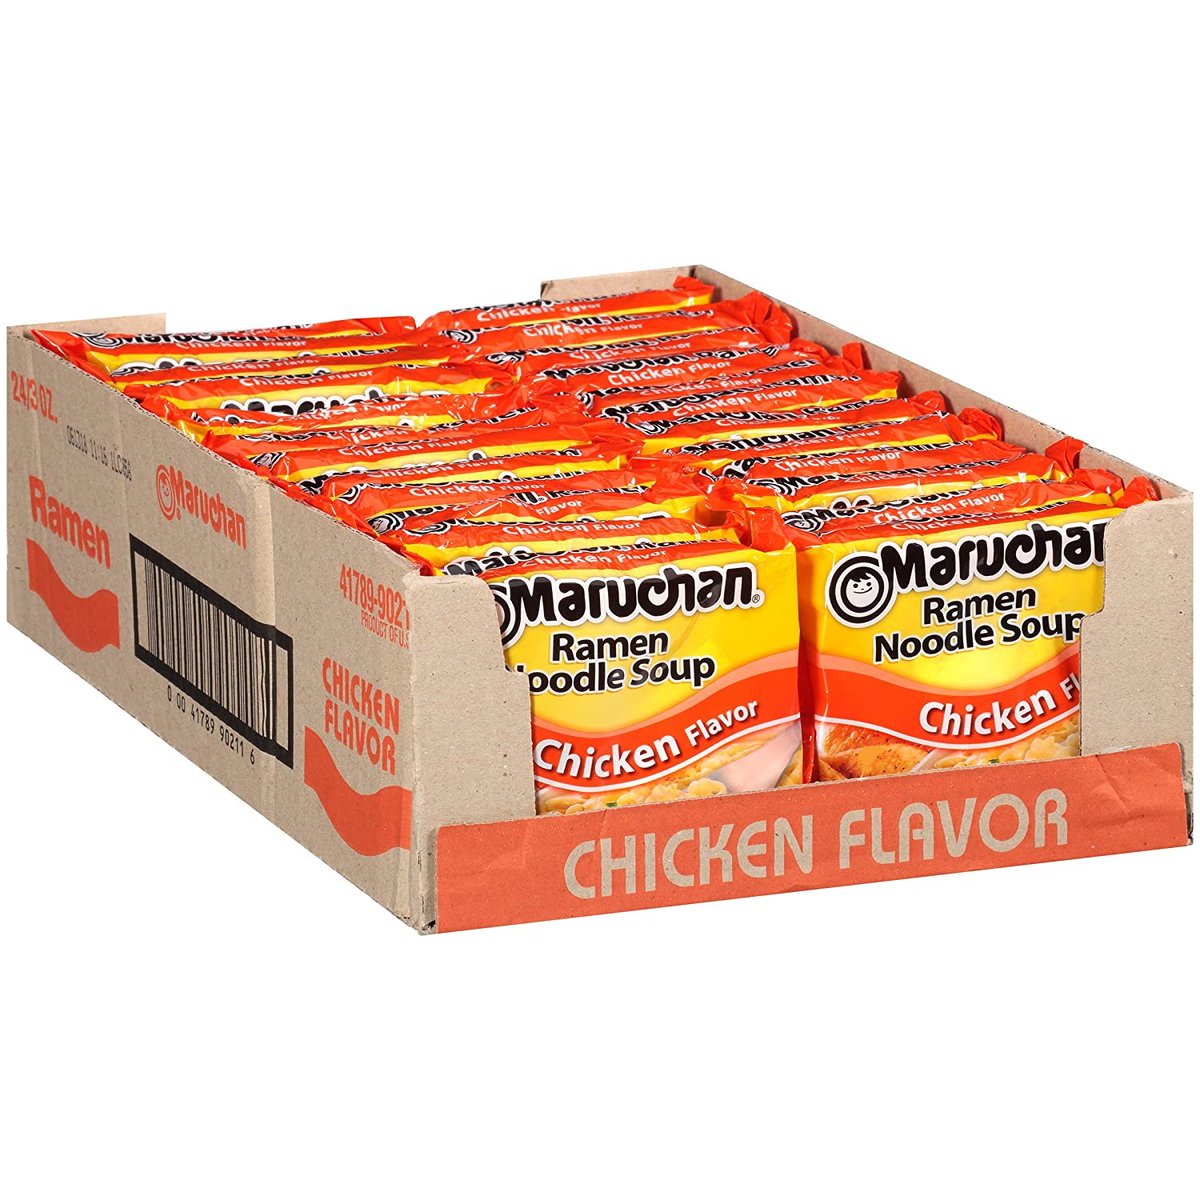 Maruchan Ramen Chicken, 3.0 Oz, Pack of 24

Only $4.56!!

